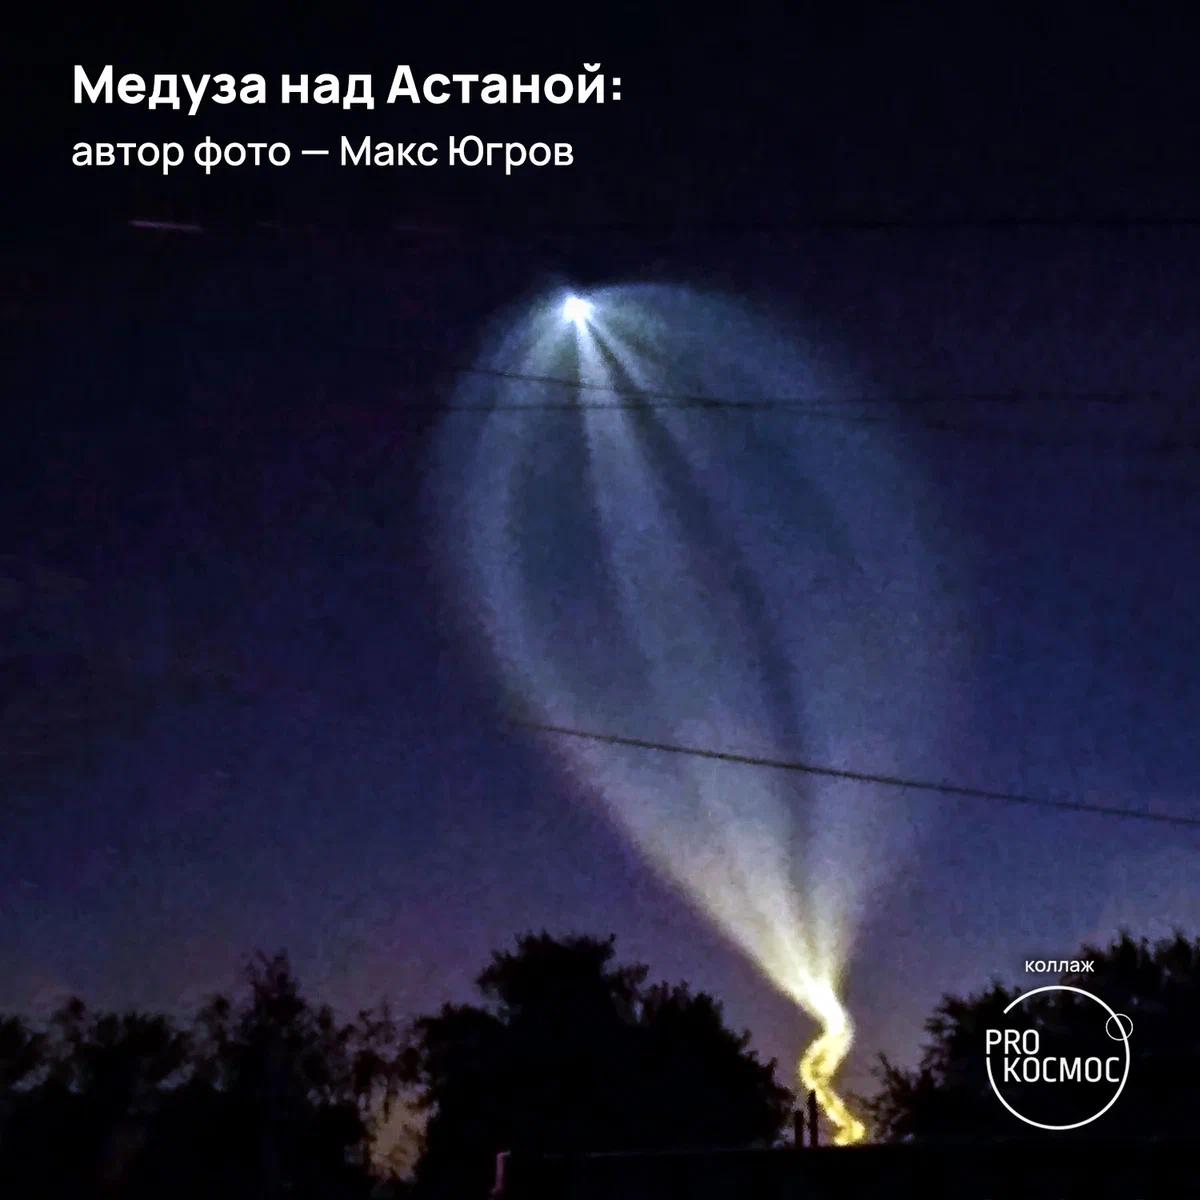 Медузы в небесах от «Союза МС-22»: сообщество AstroAlert опубликовало снимки редкого атмосферного явления из разных городов height=1200px width=1200px